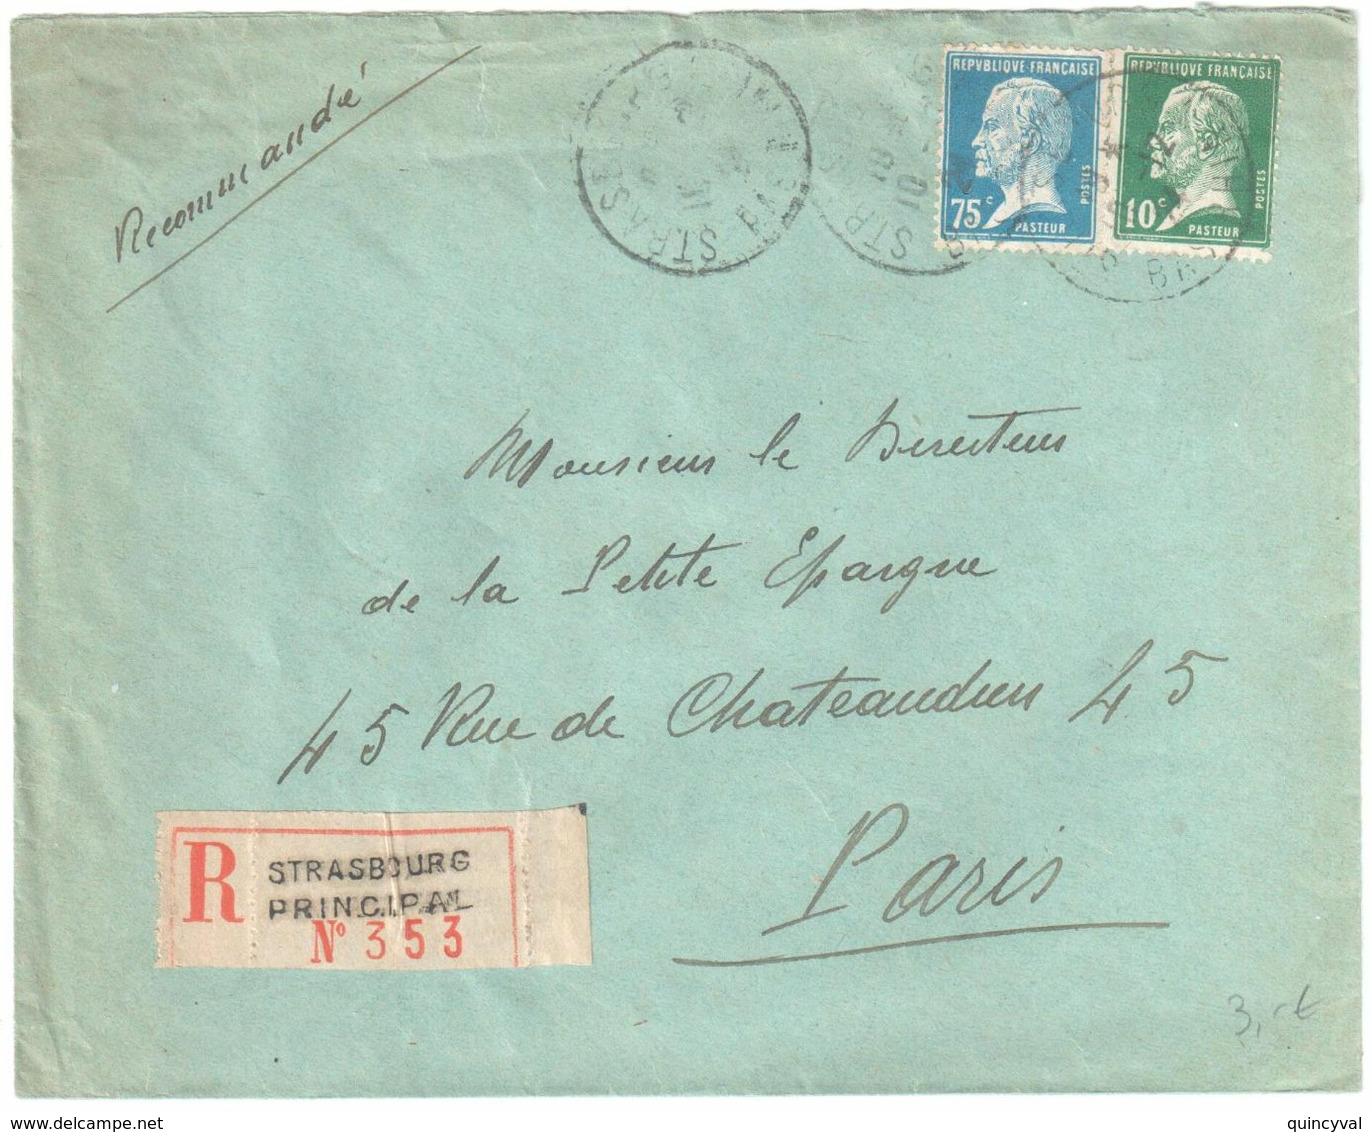 ARLES S RHONE Lettre Recommandée 1 F Pasteur Bord De Feuille 5c Blanc Yv 111 179 Ob 18 1 1926 - Covers & Documents